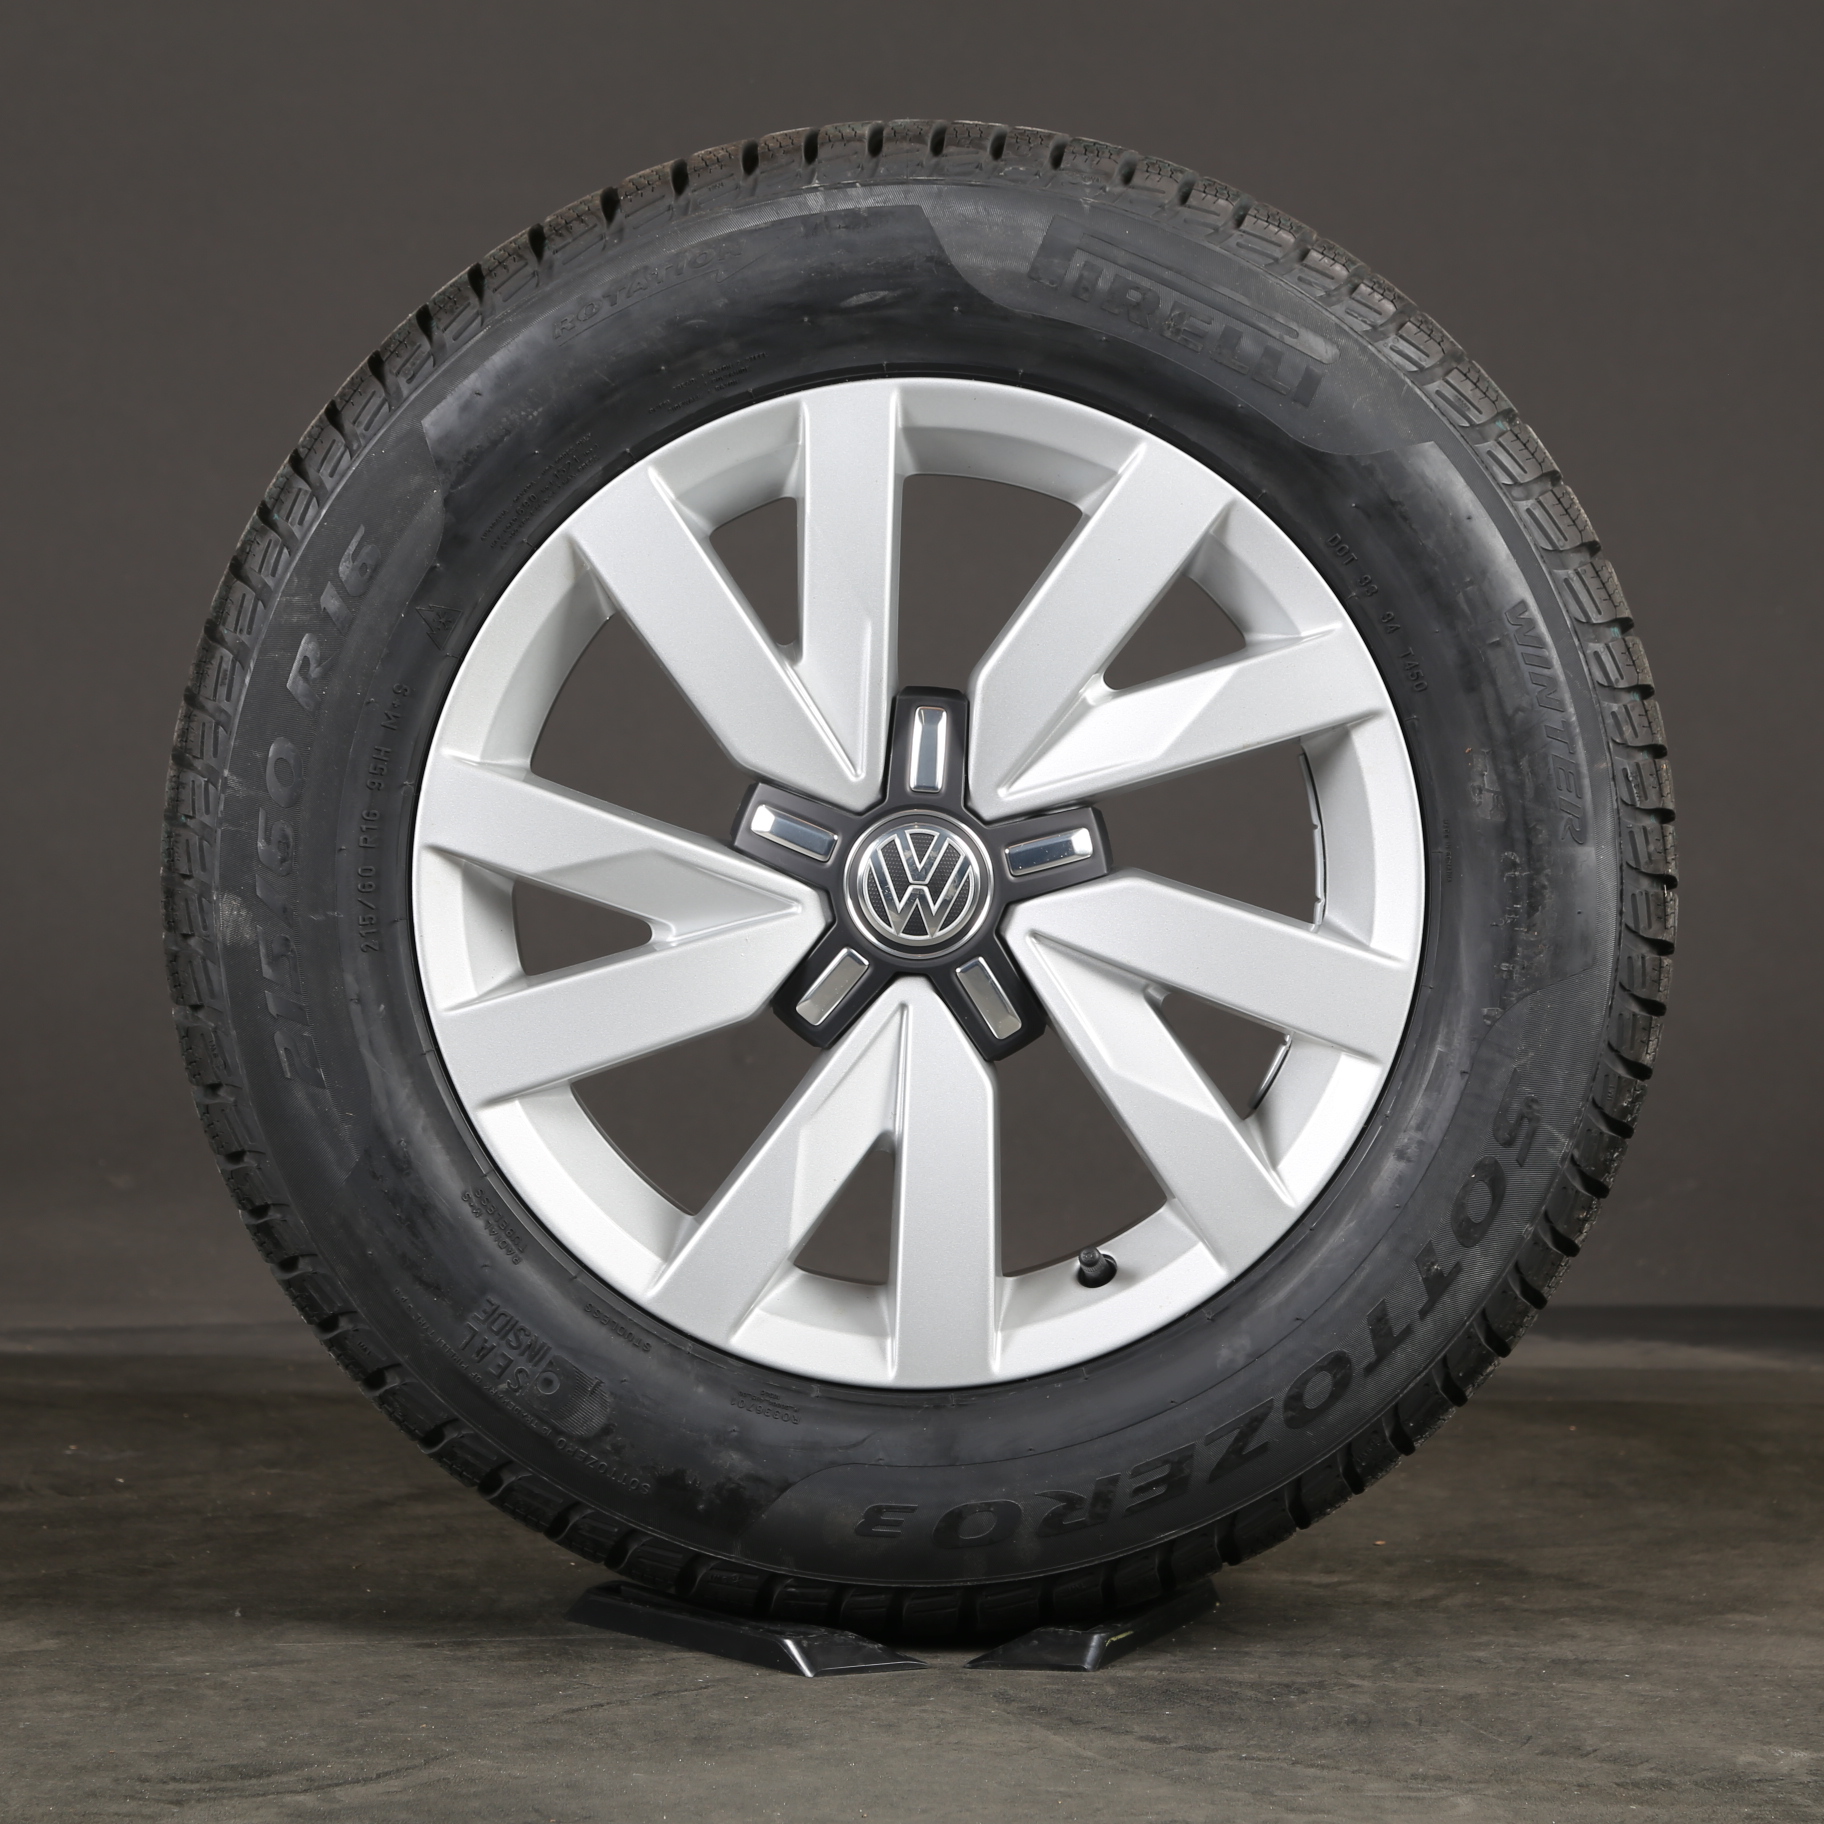 16 pulgadas Aragón ruedas de invierno llantas originales VW Passat B8 3G0601025A neumáticos de invierno